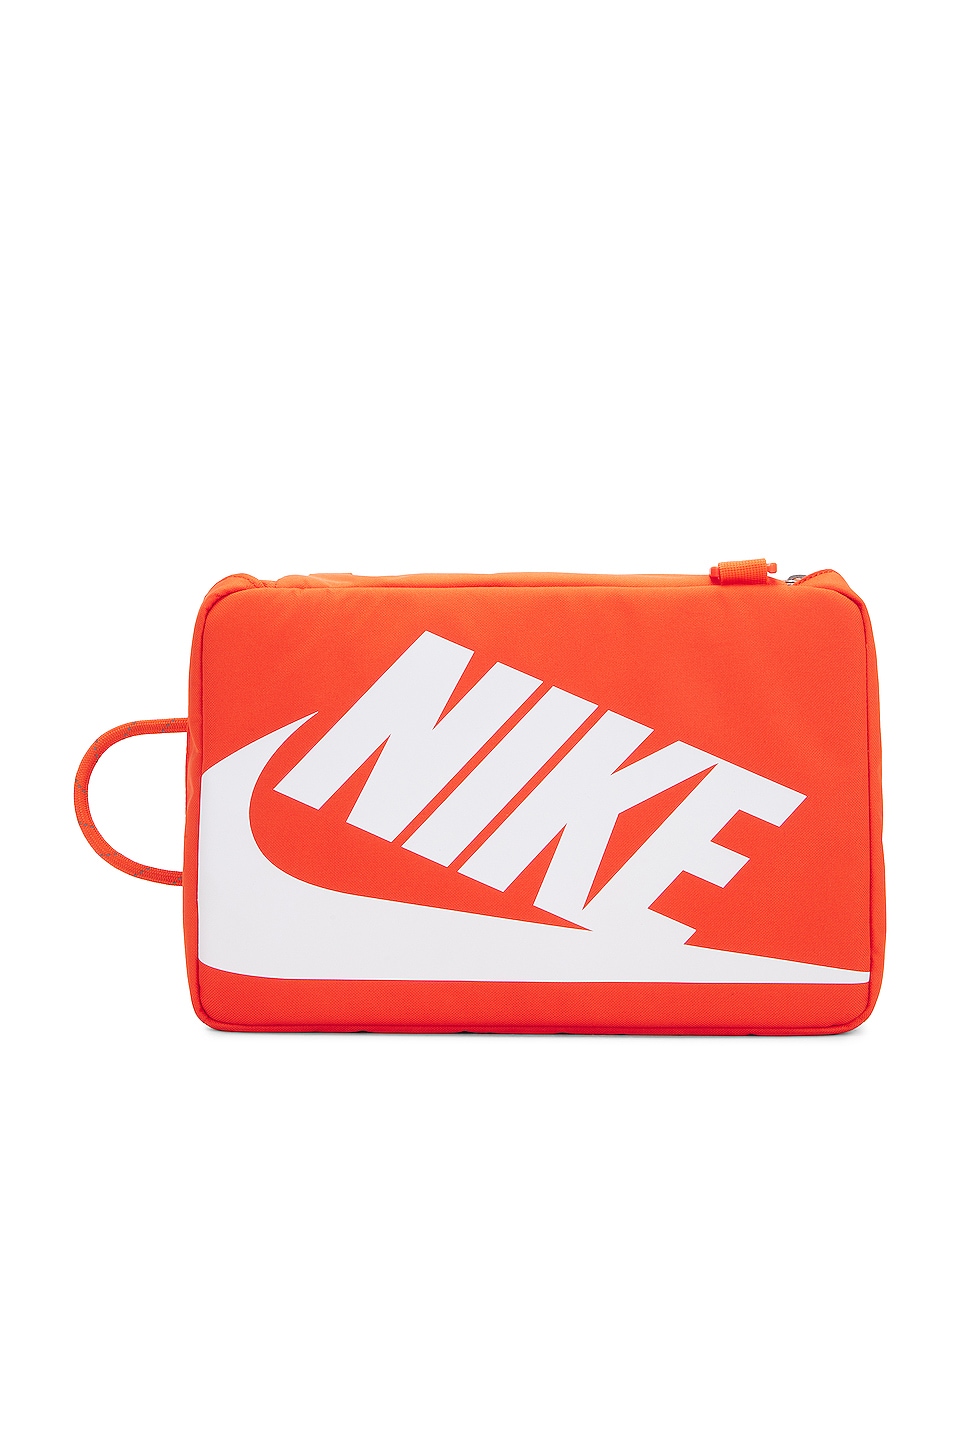 Shop Nike Shoe Box Bag DA7337-870 orange